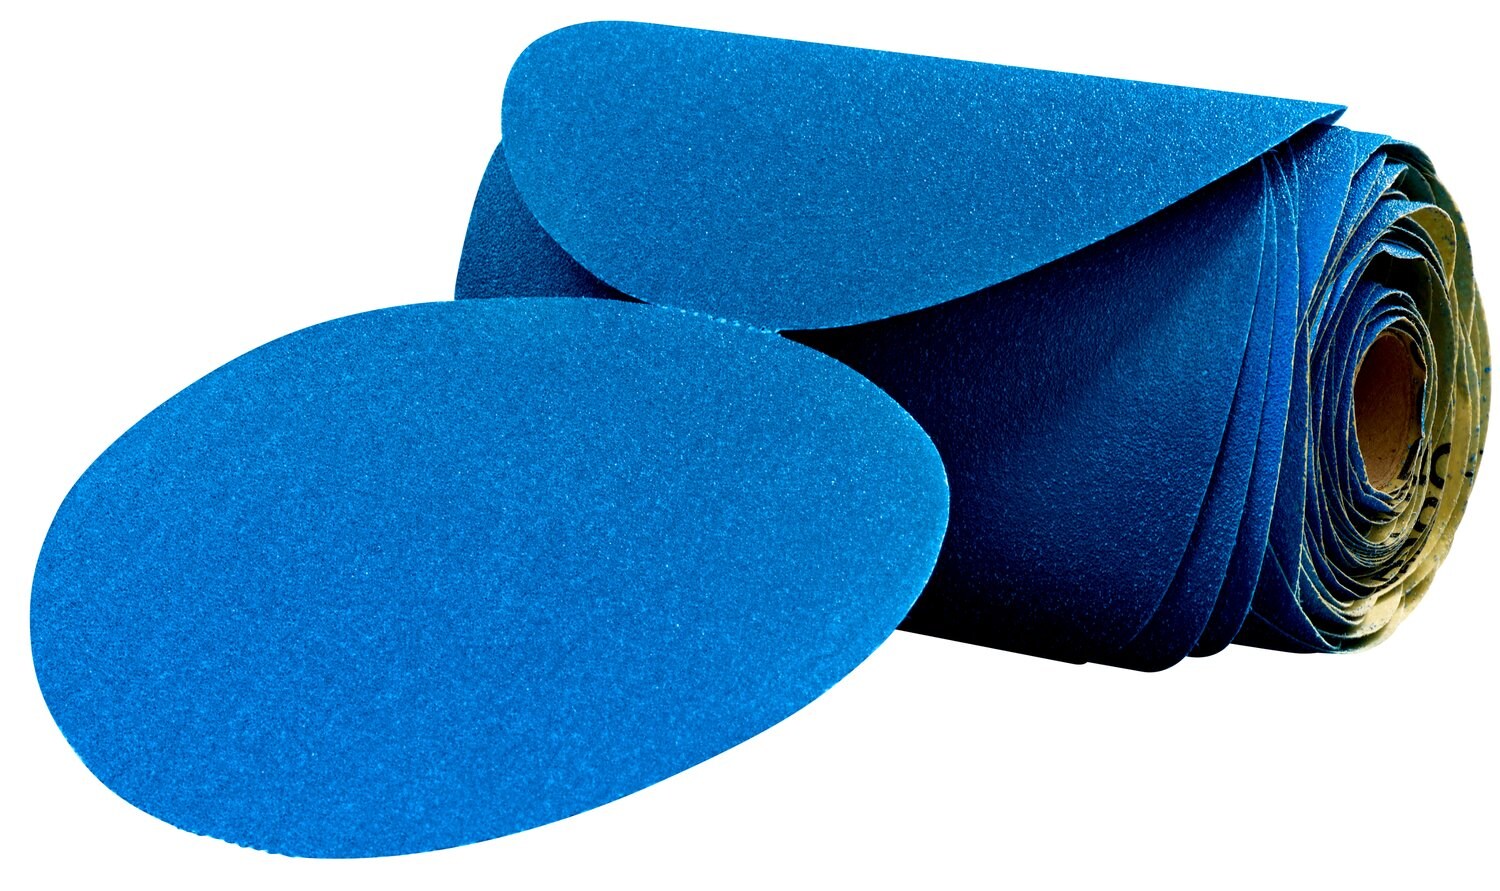 7100098230 - 3M Stikit Blue Abrasive Disc Roll, 36204, 6 in, 120 grade, 100 discs
per roll, 5 rolls per case